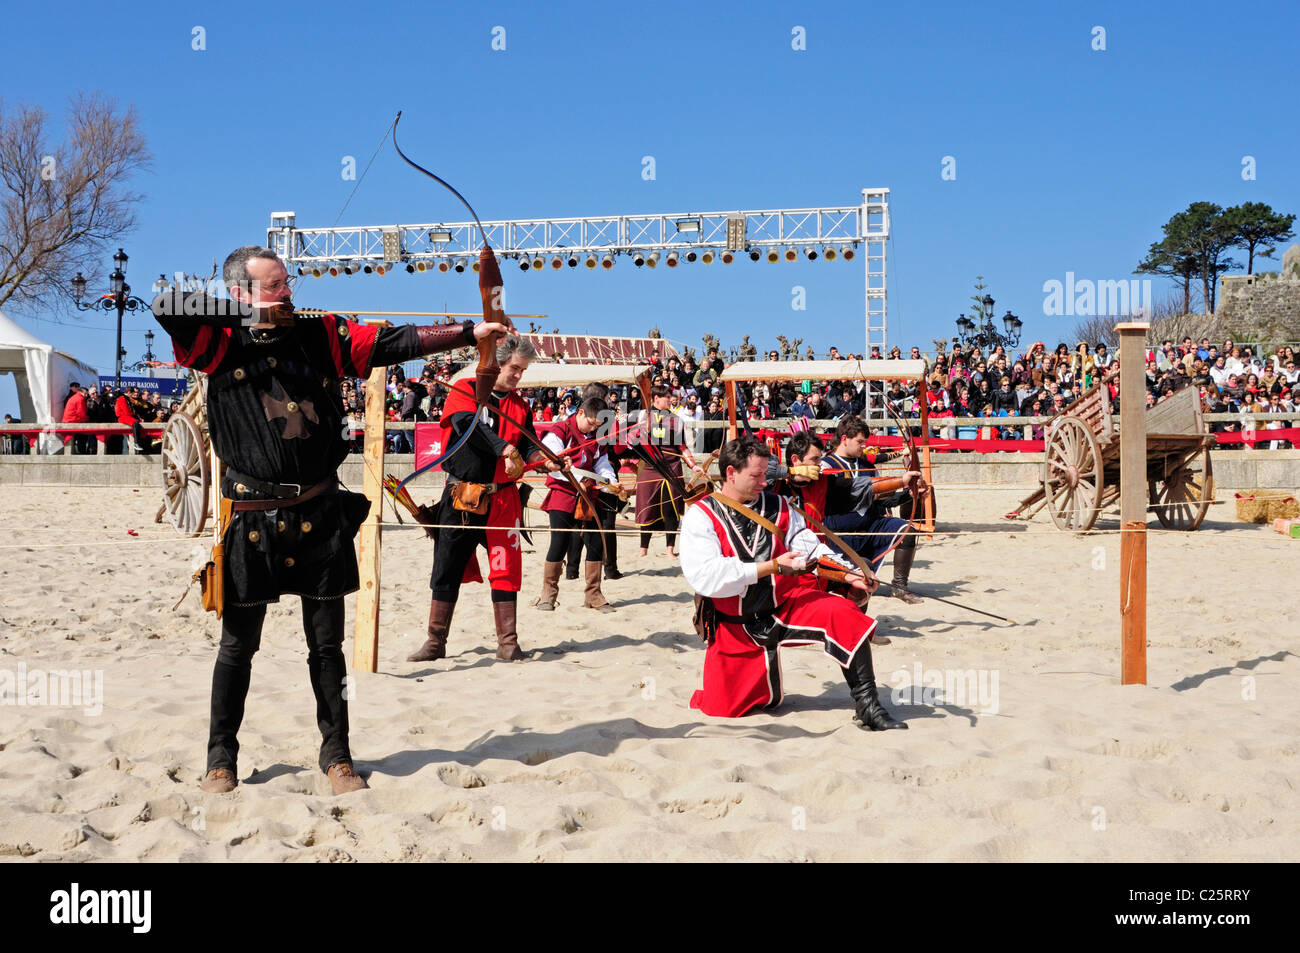 Juegos Medievales en la arribada conmemoración. Baiona, Pontevedra, Galicia, España. Foto de stock